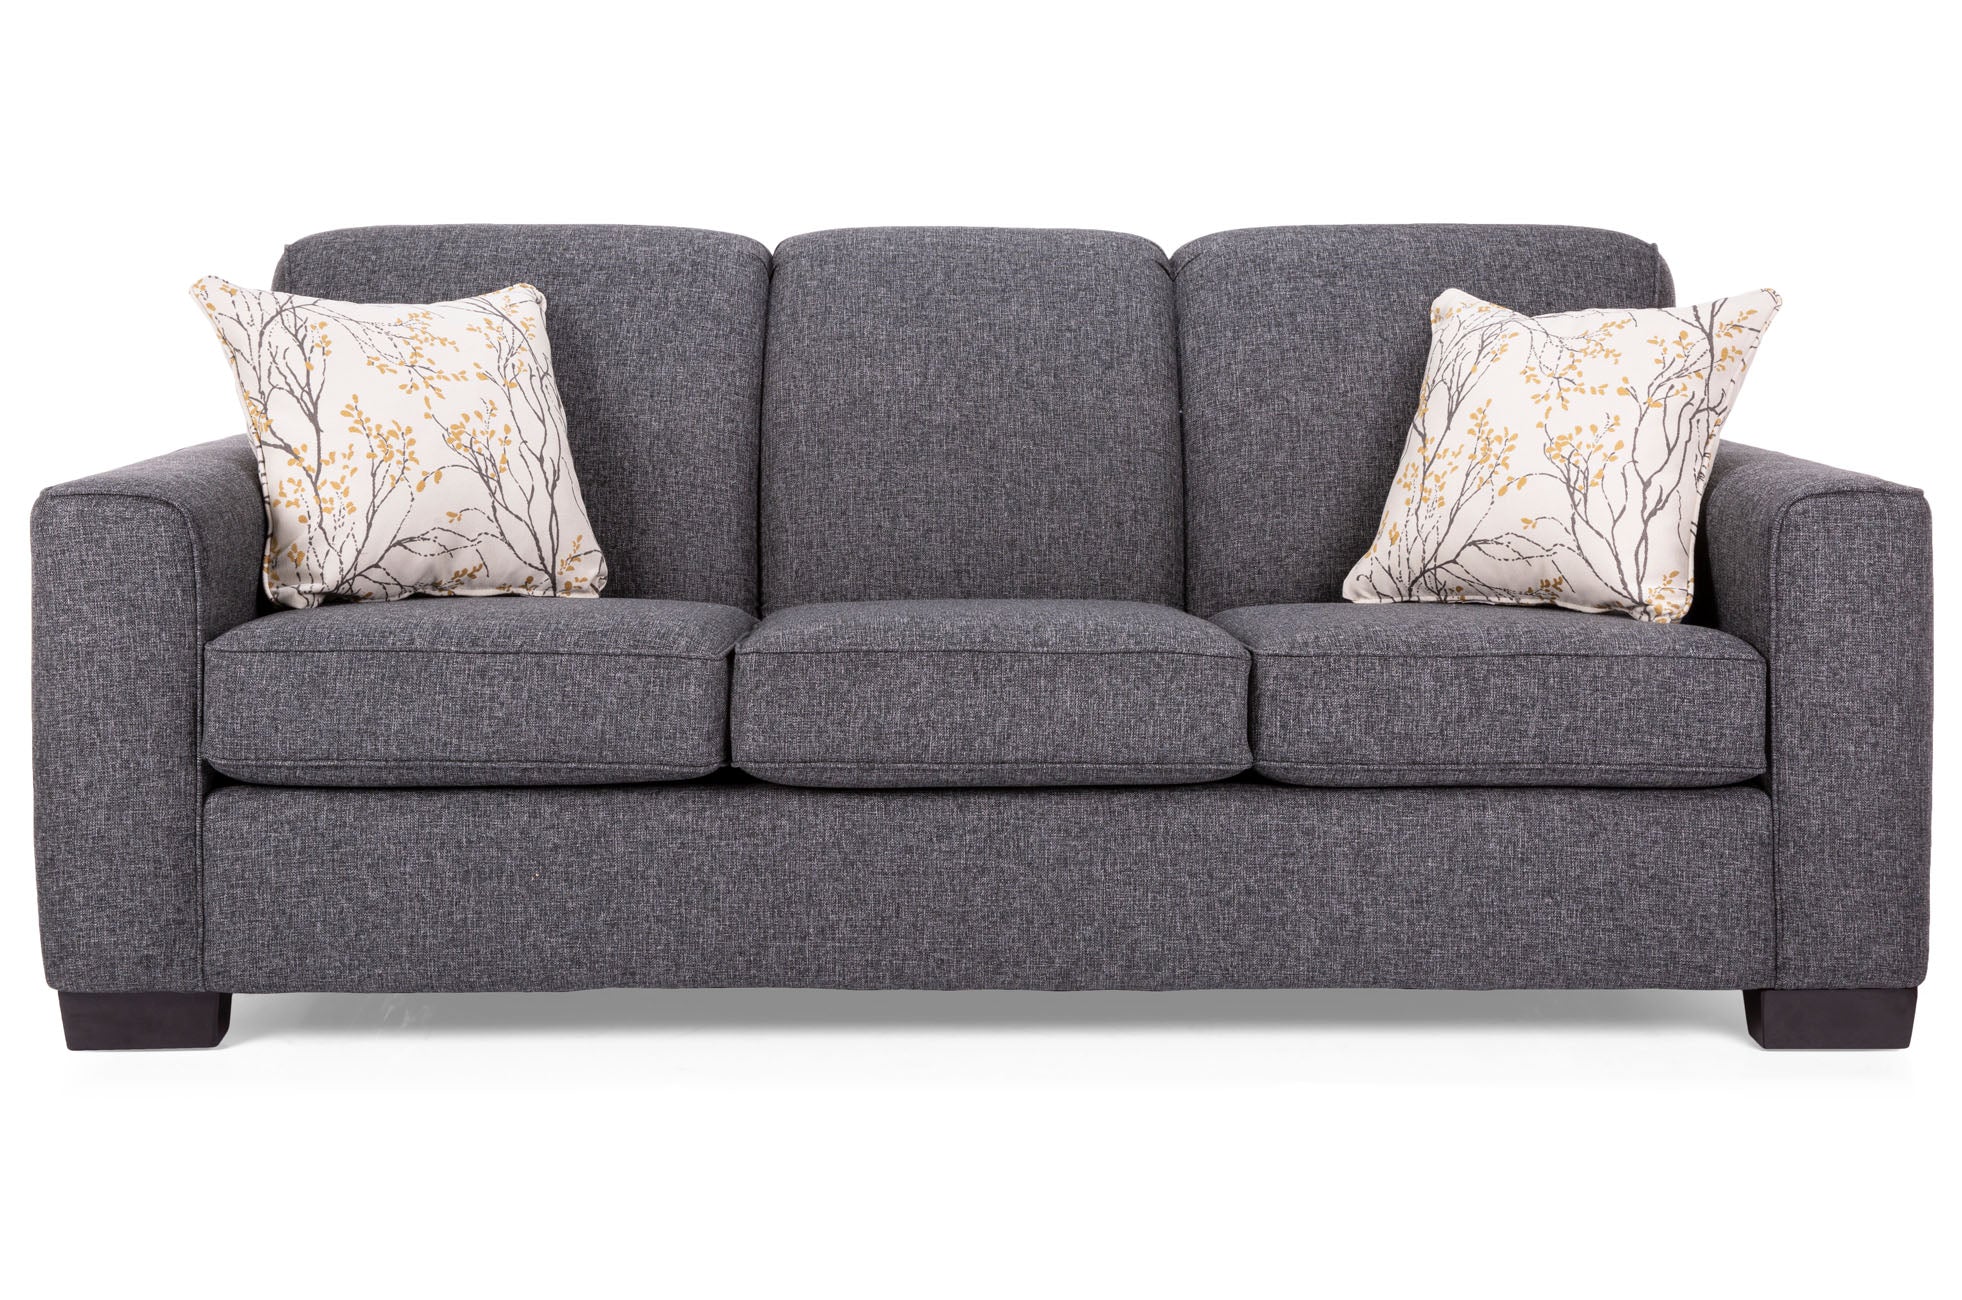 Lotus Queen Sofa Bed - MJM Furniture